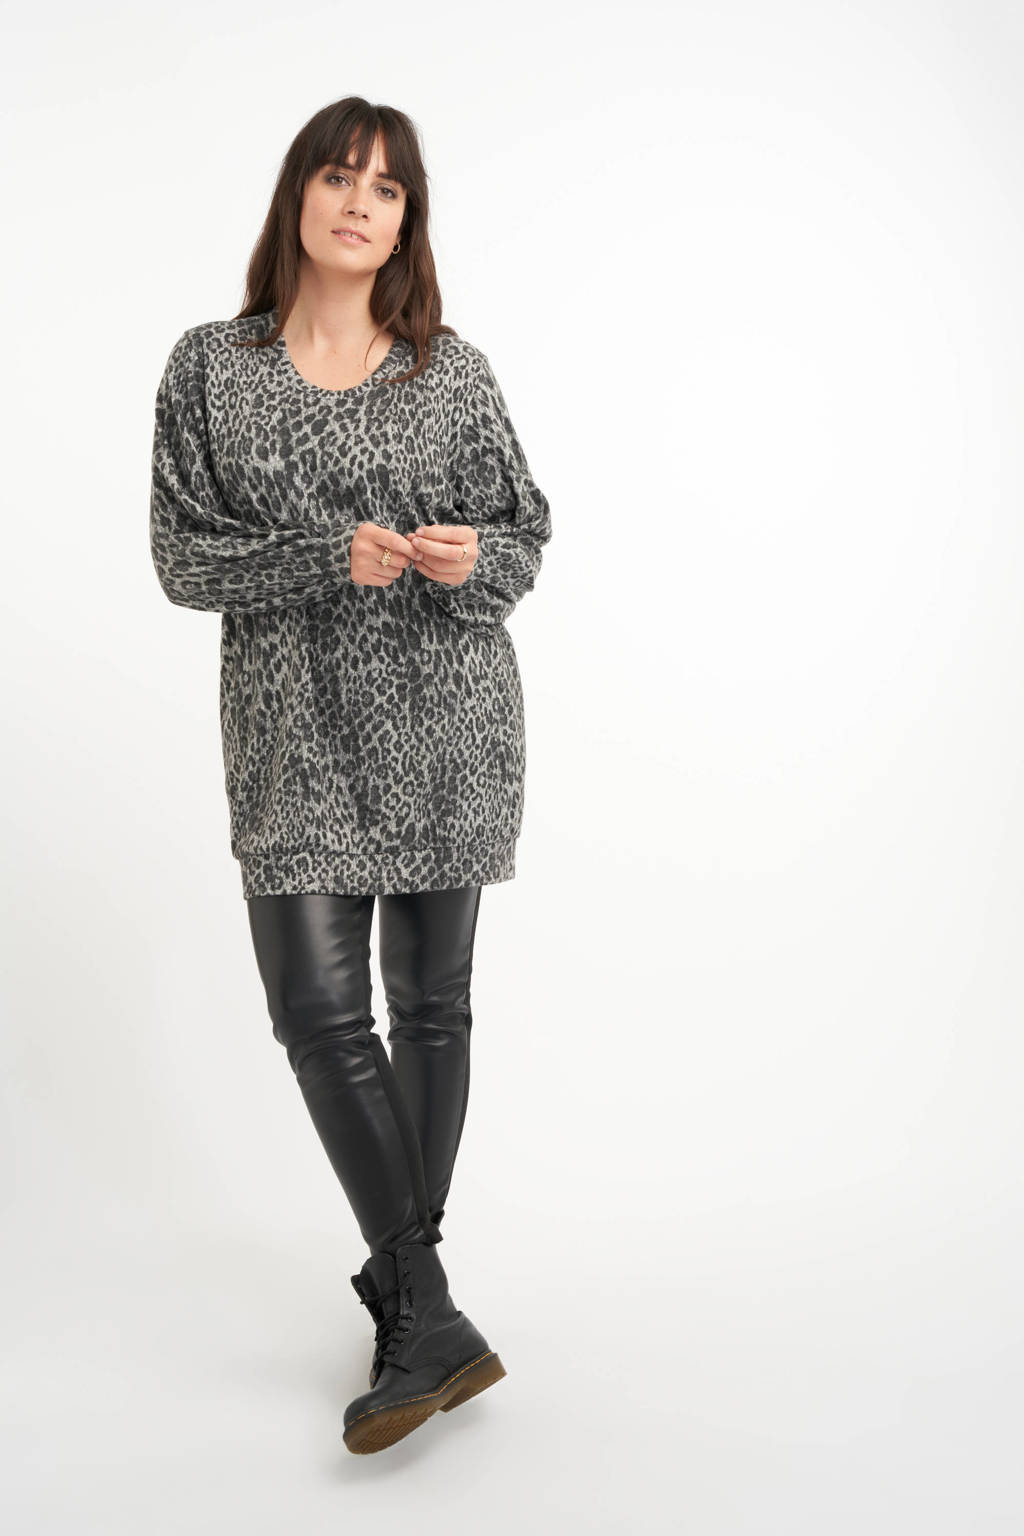 Grijze dames MS Mode trui van polyester met panterprint, lange mouwen en elastische boord